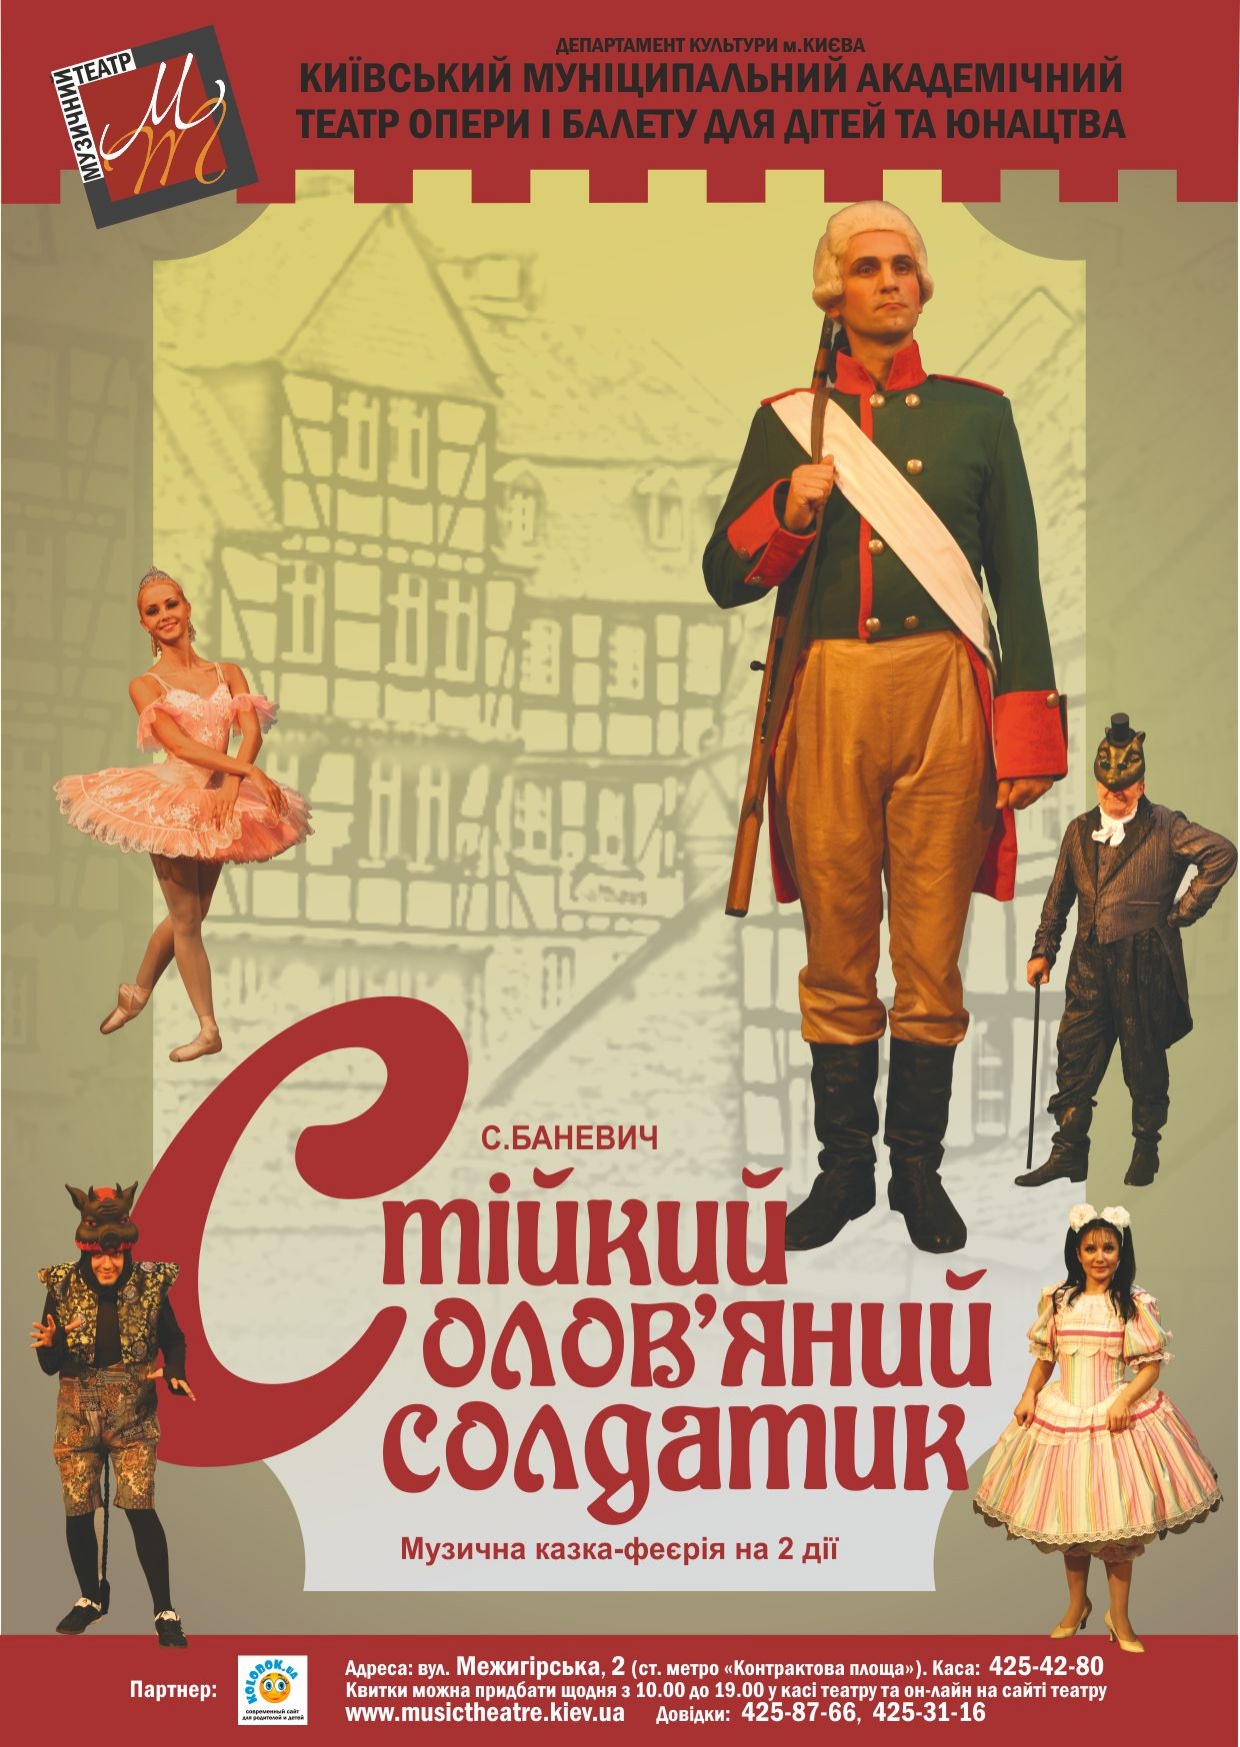 kievskiy-teatr-opery-i-baleta-raspisanie-na-8-10-iyunya-afisha-2